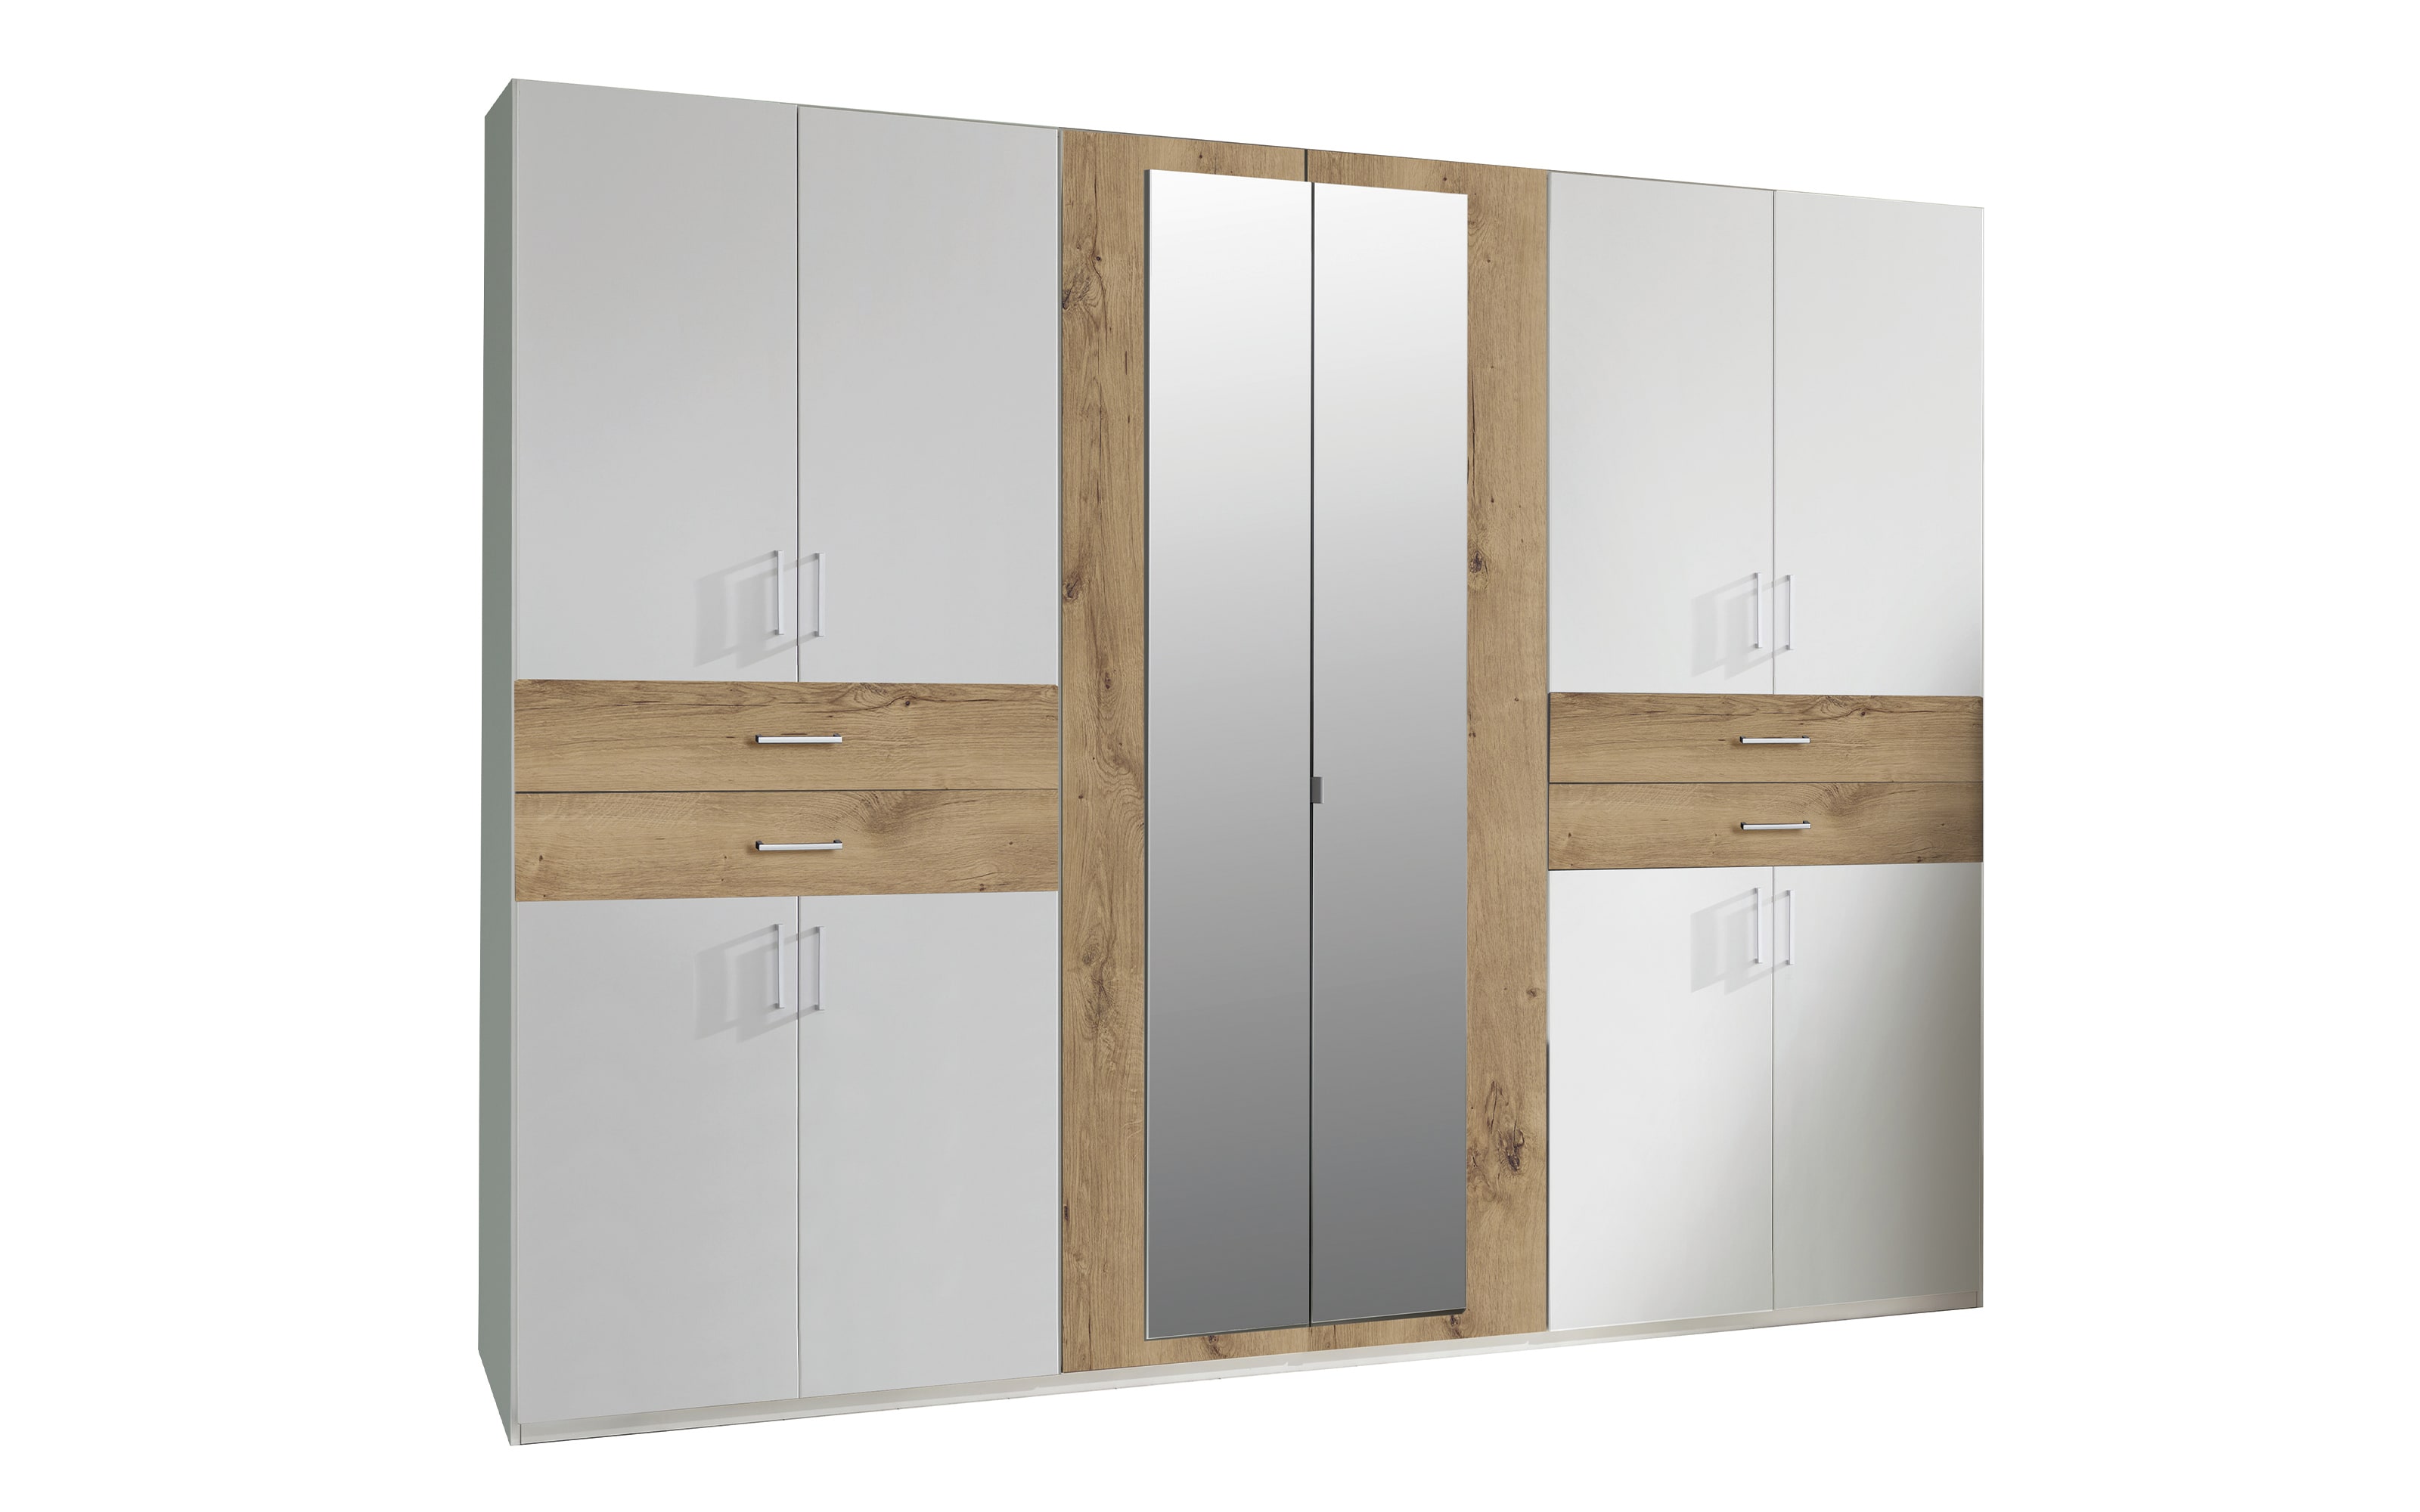 Drehtürenschrank Taiga, weiß, Absetzungen Plankeneiche, bei Hardeck online kaufen x 270 208 cm